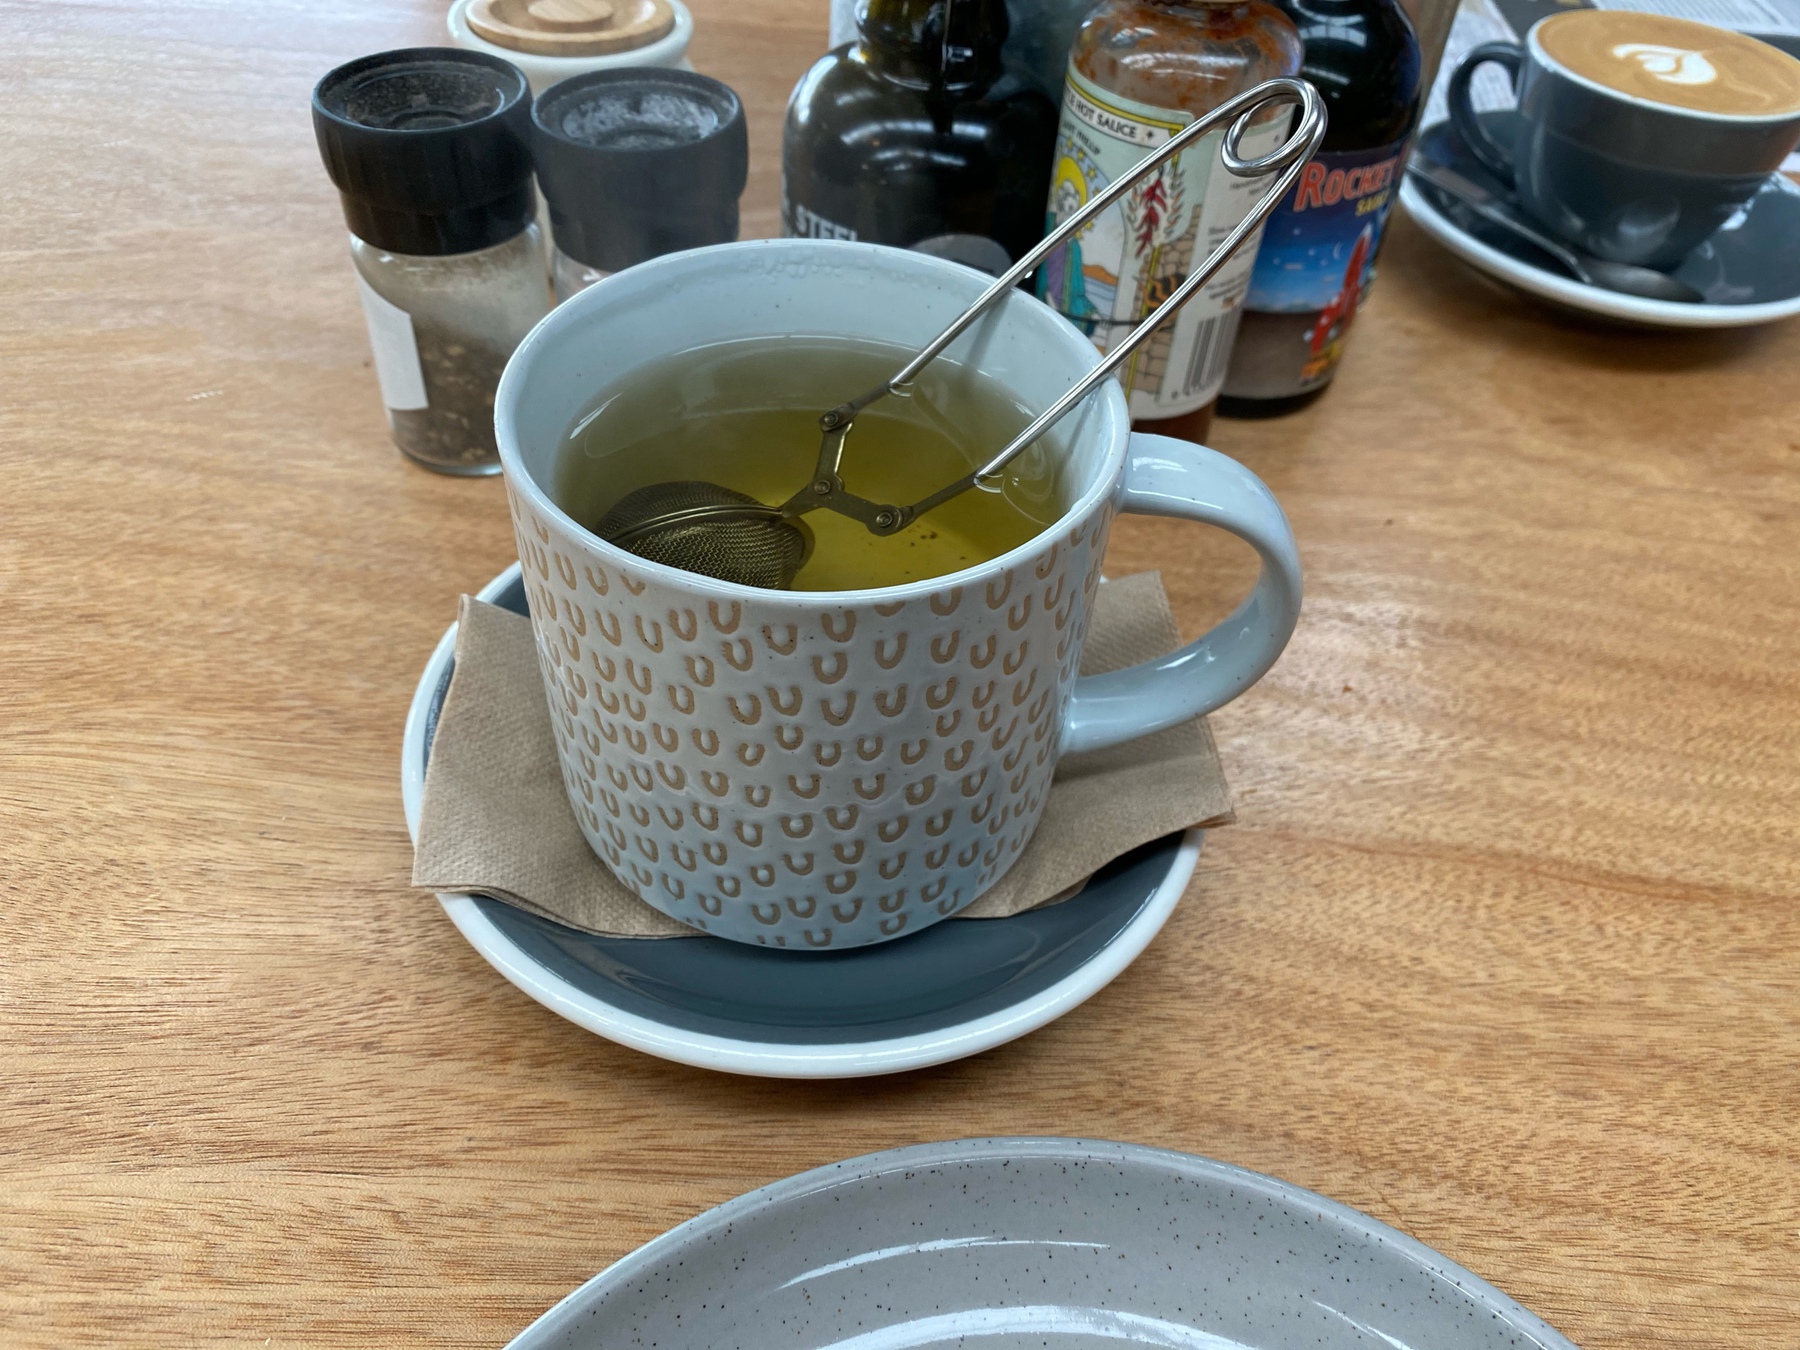 Large mug of tea. 